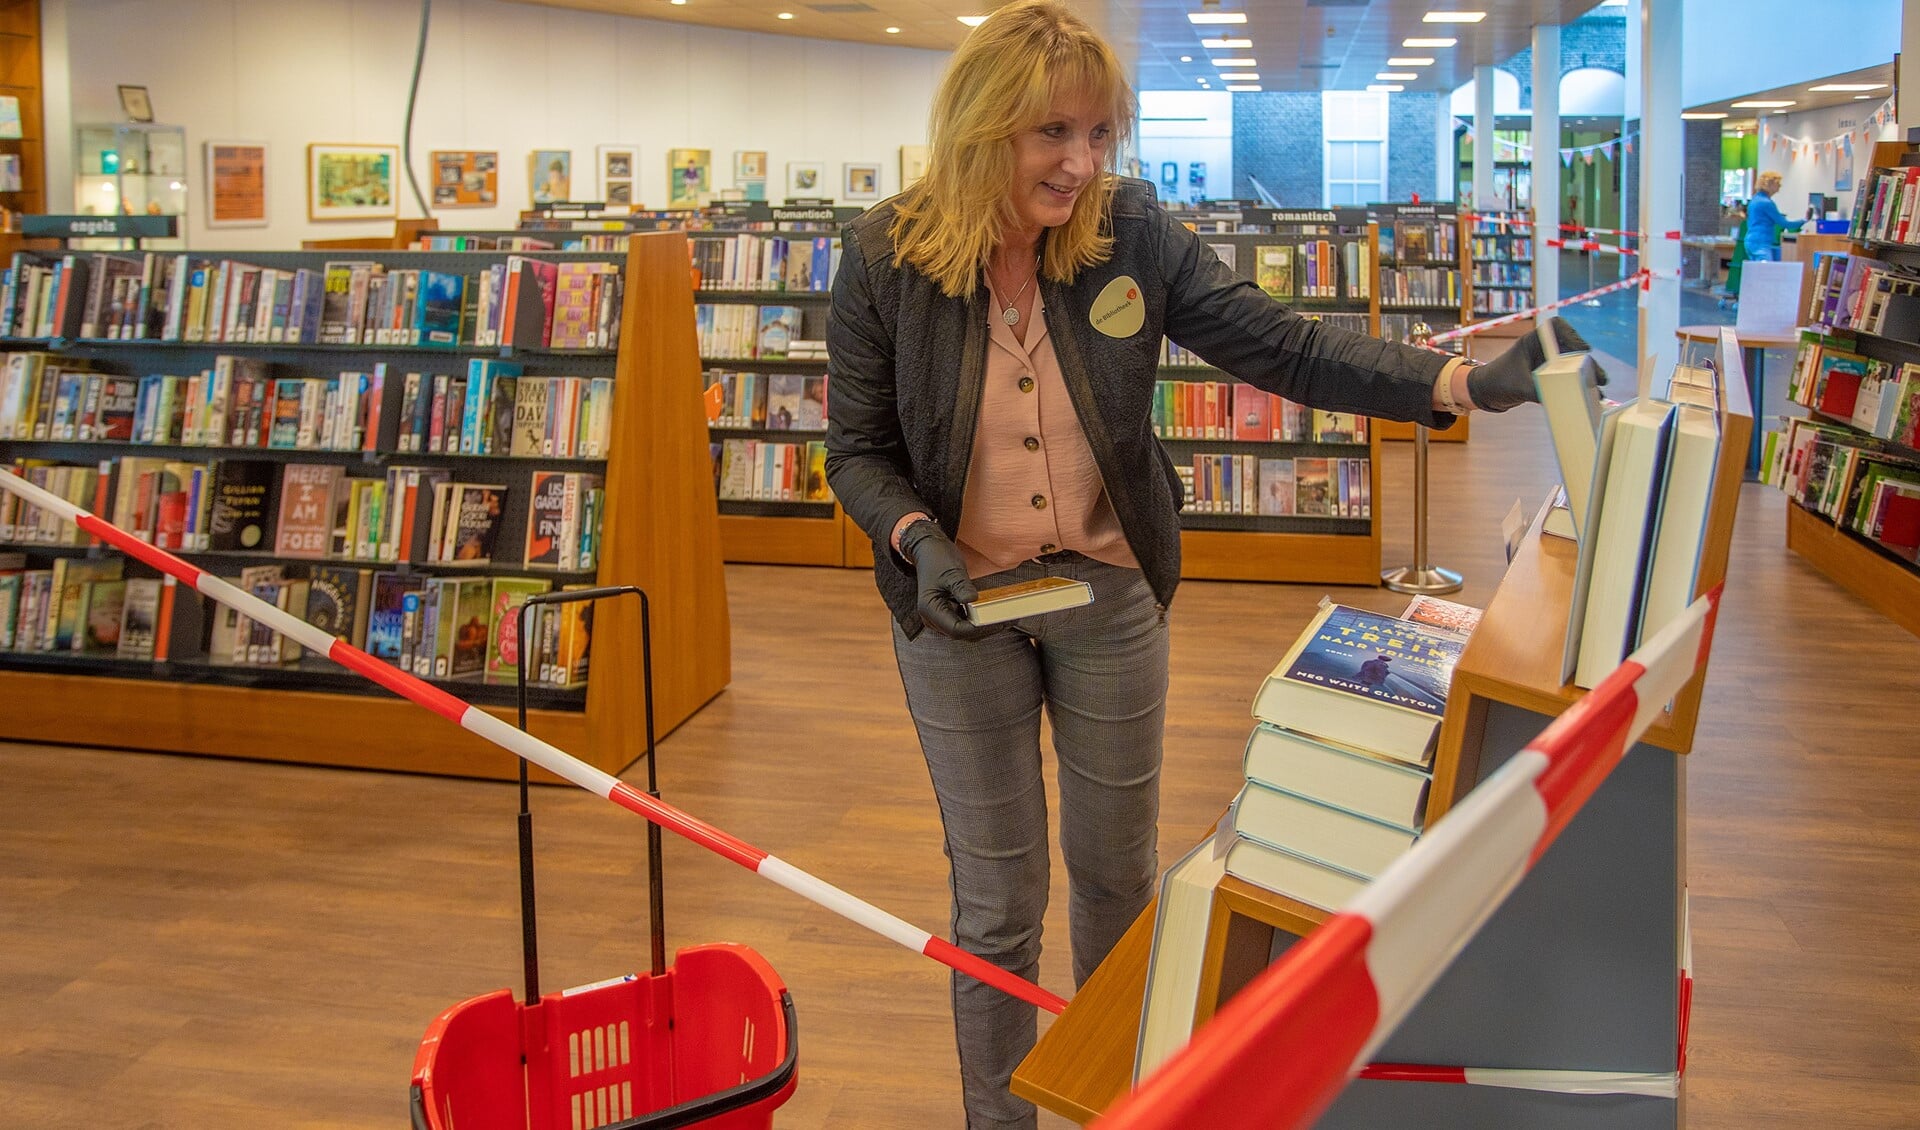 In de bibliotheek in Laren zijn de nodige coronamaatregelen genomen.